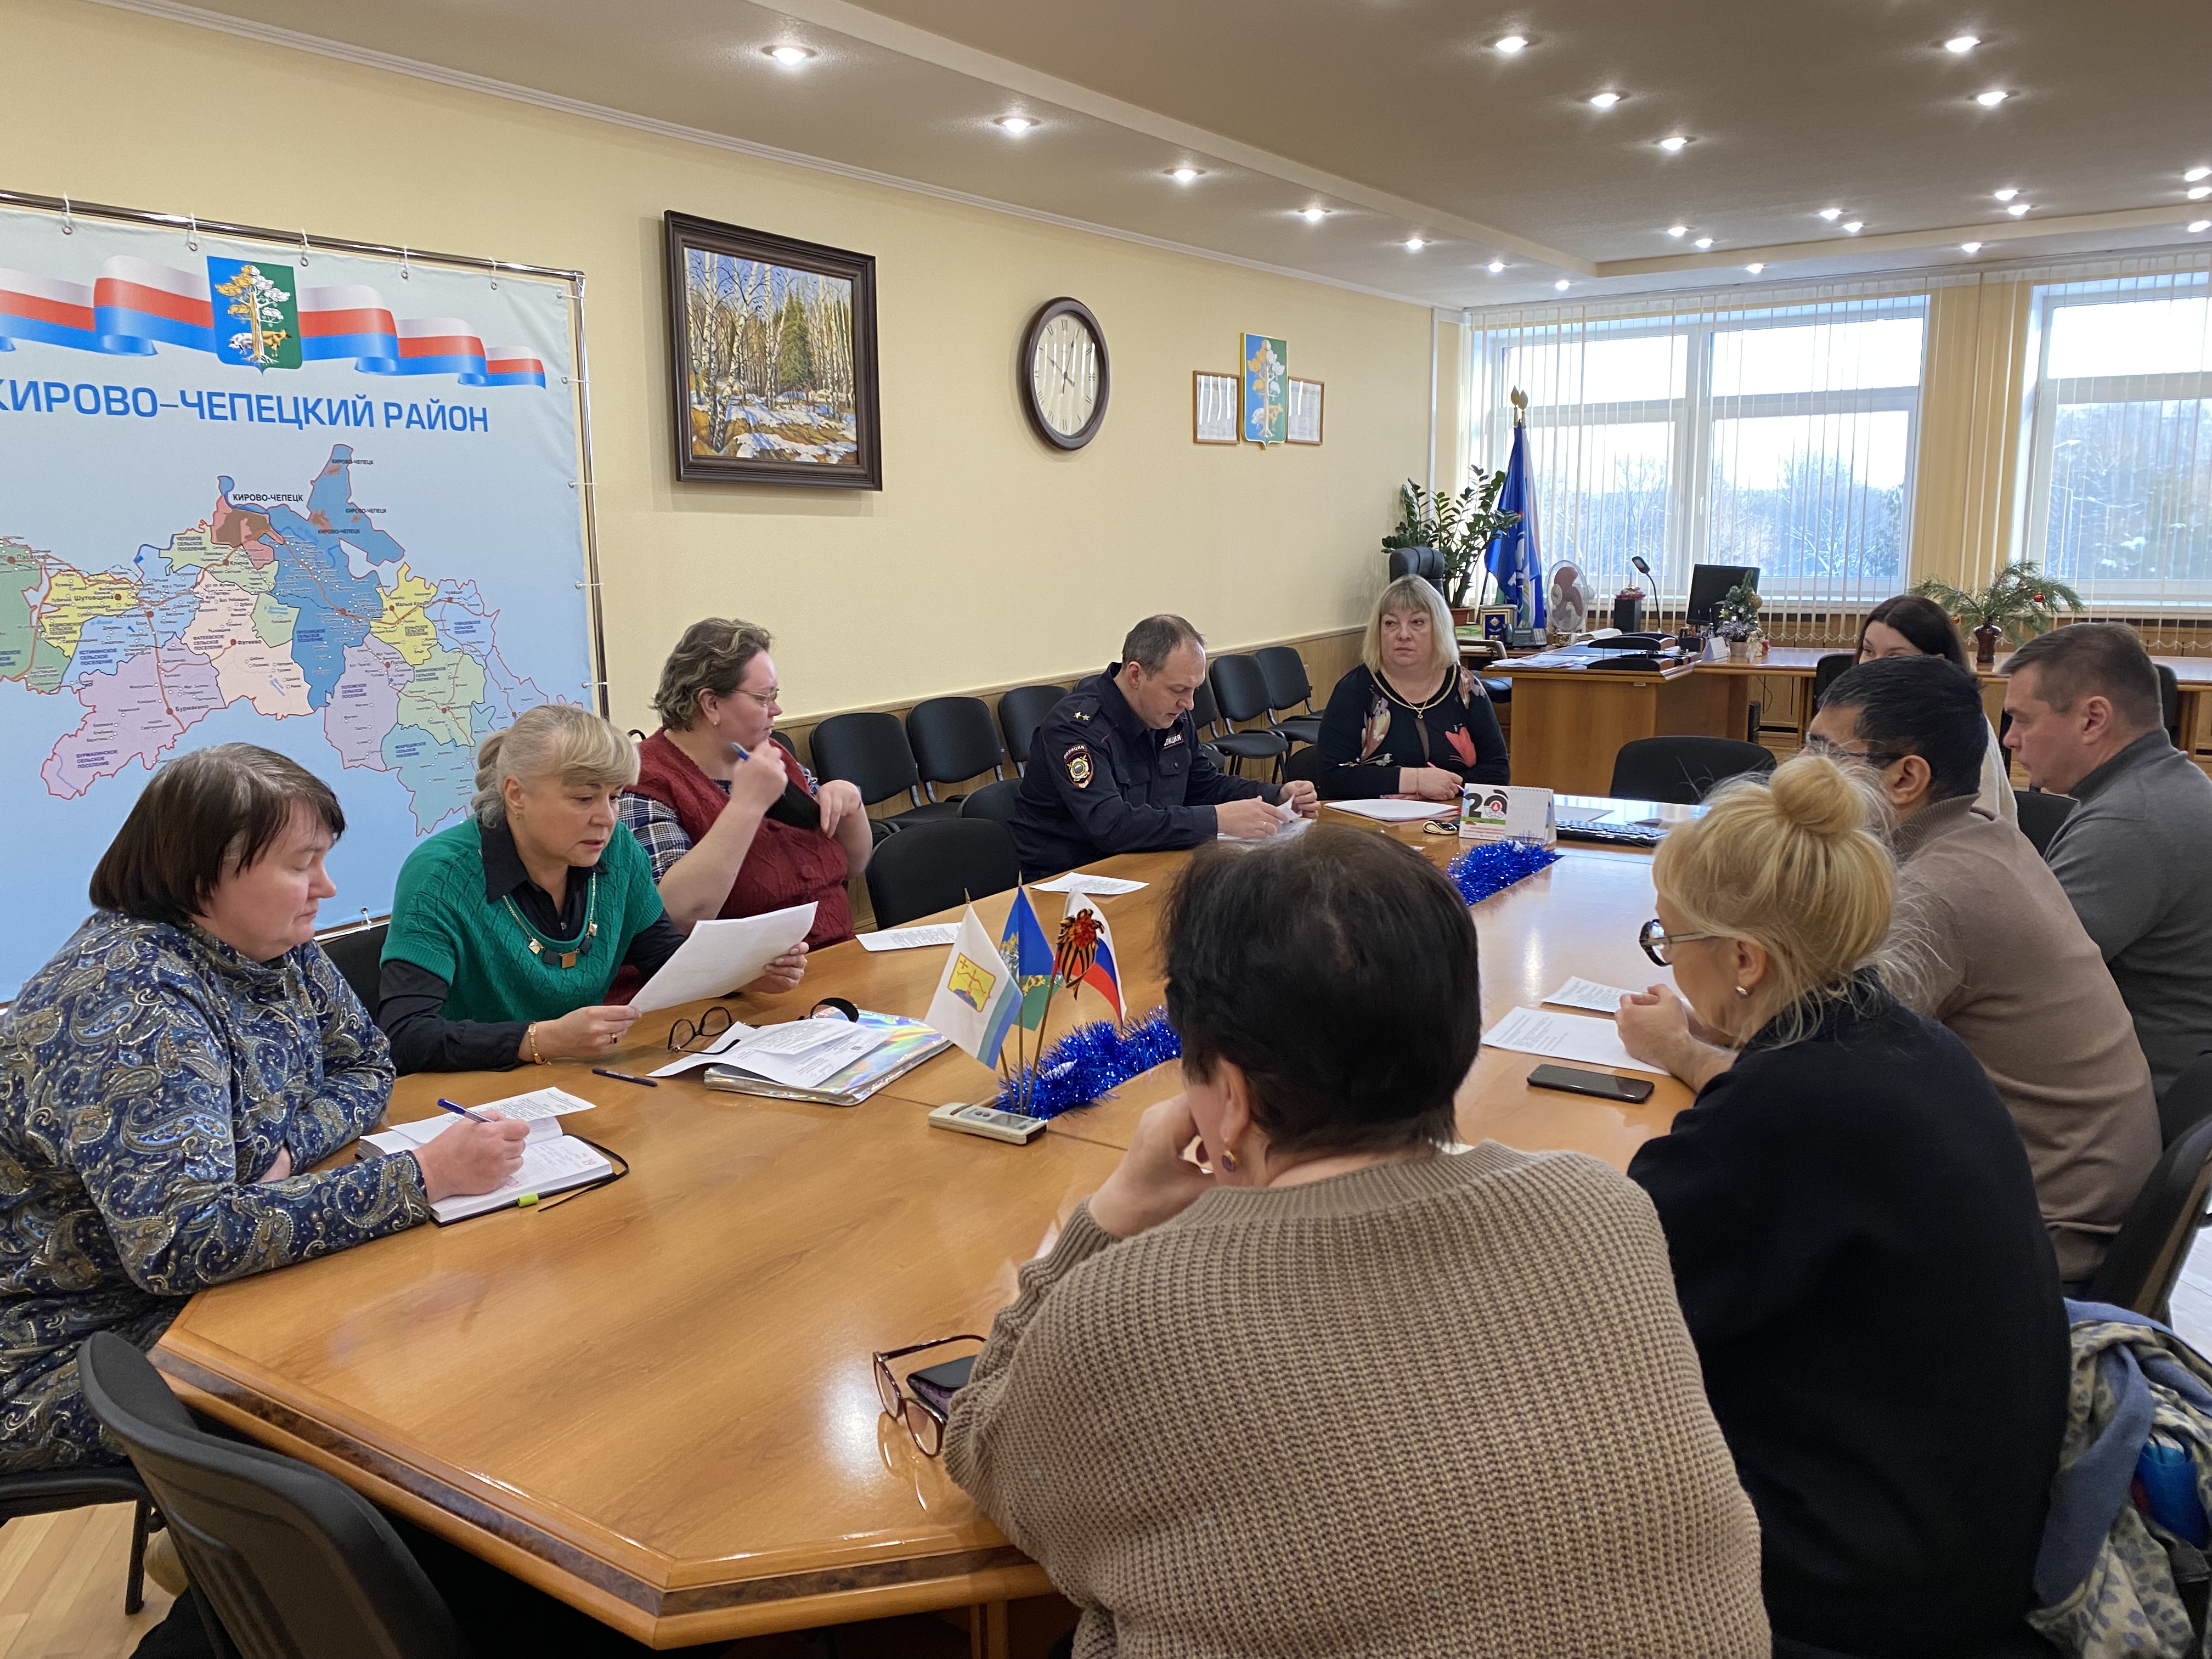 Состоялось заседание координационного совета по профилактике преступлений и правонарушений и антинаркотической комиссии Кирово-Чепецкого района.